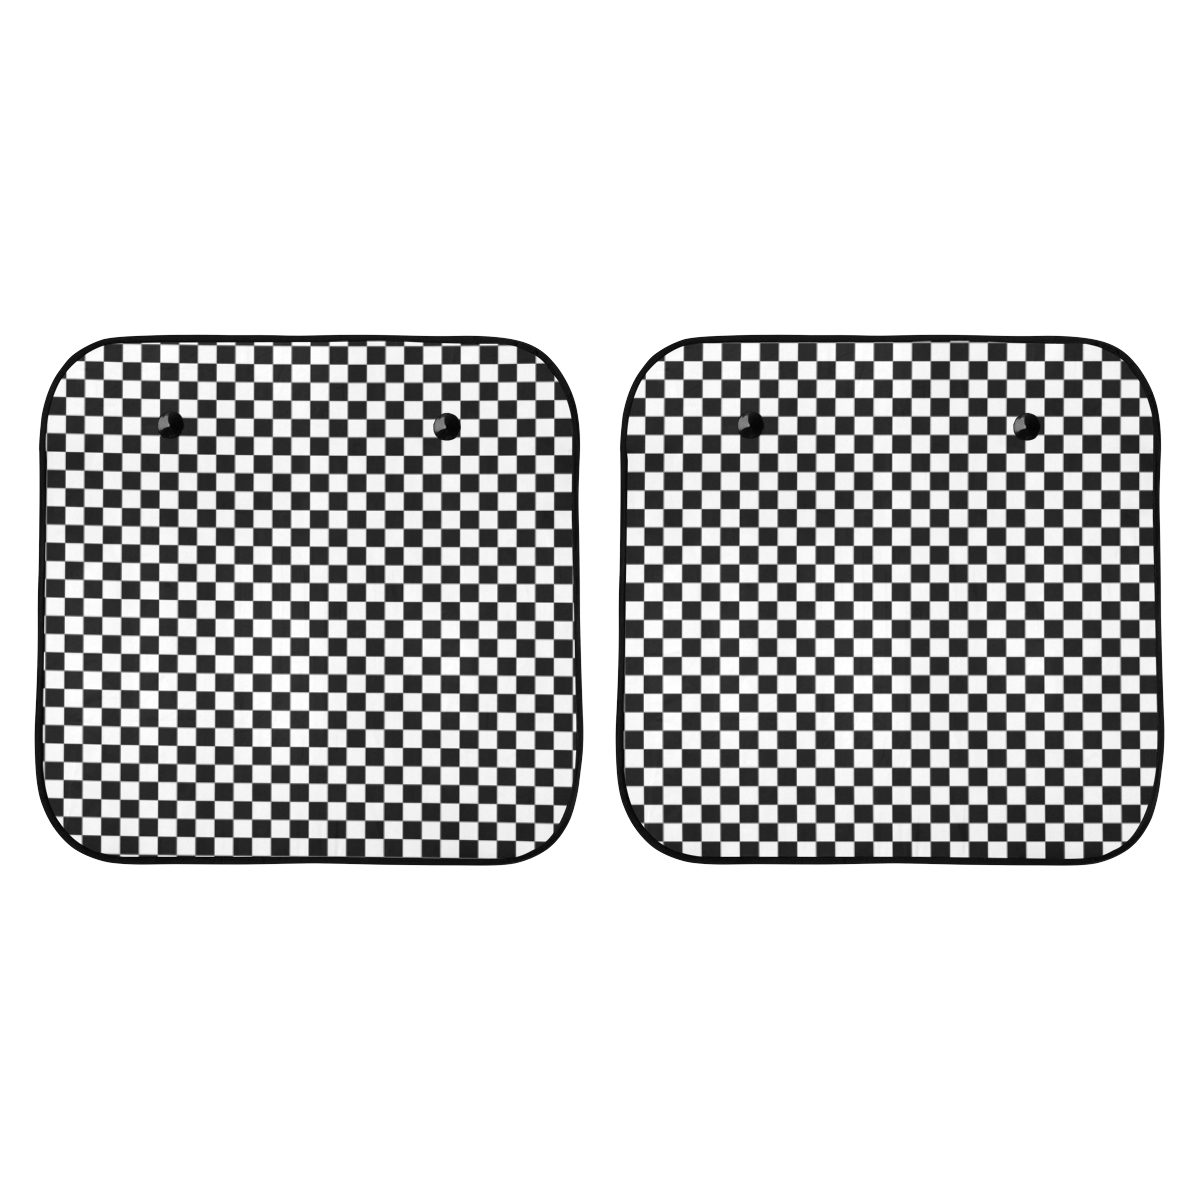 Checkerboard White And Black Car Sun Shade 28"x28"x2pcs